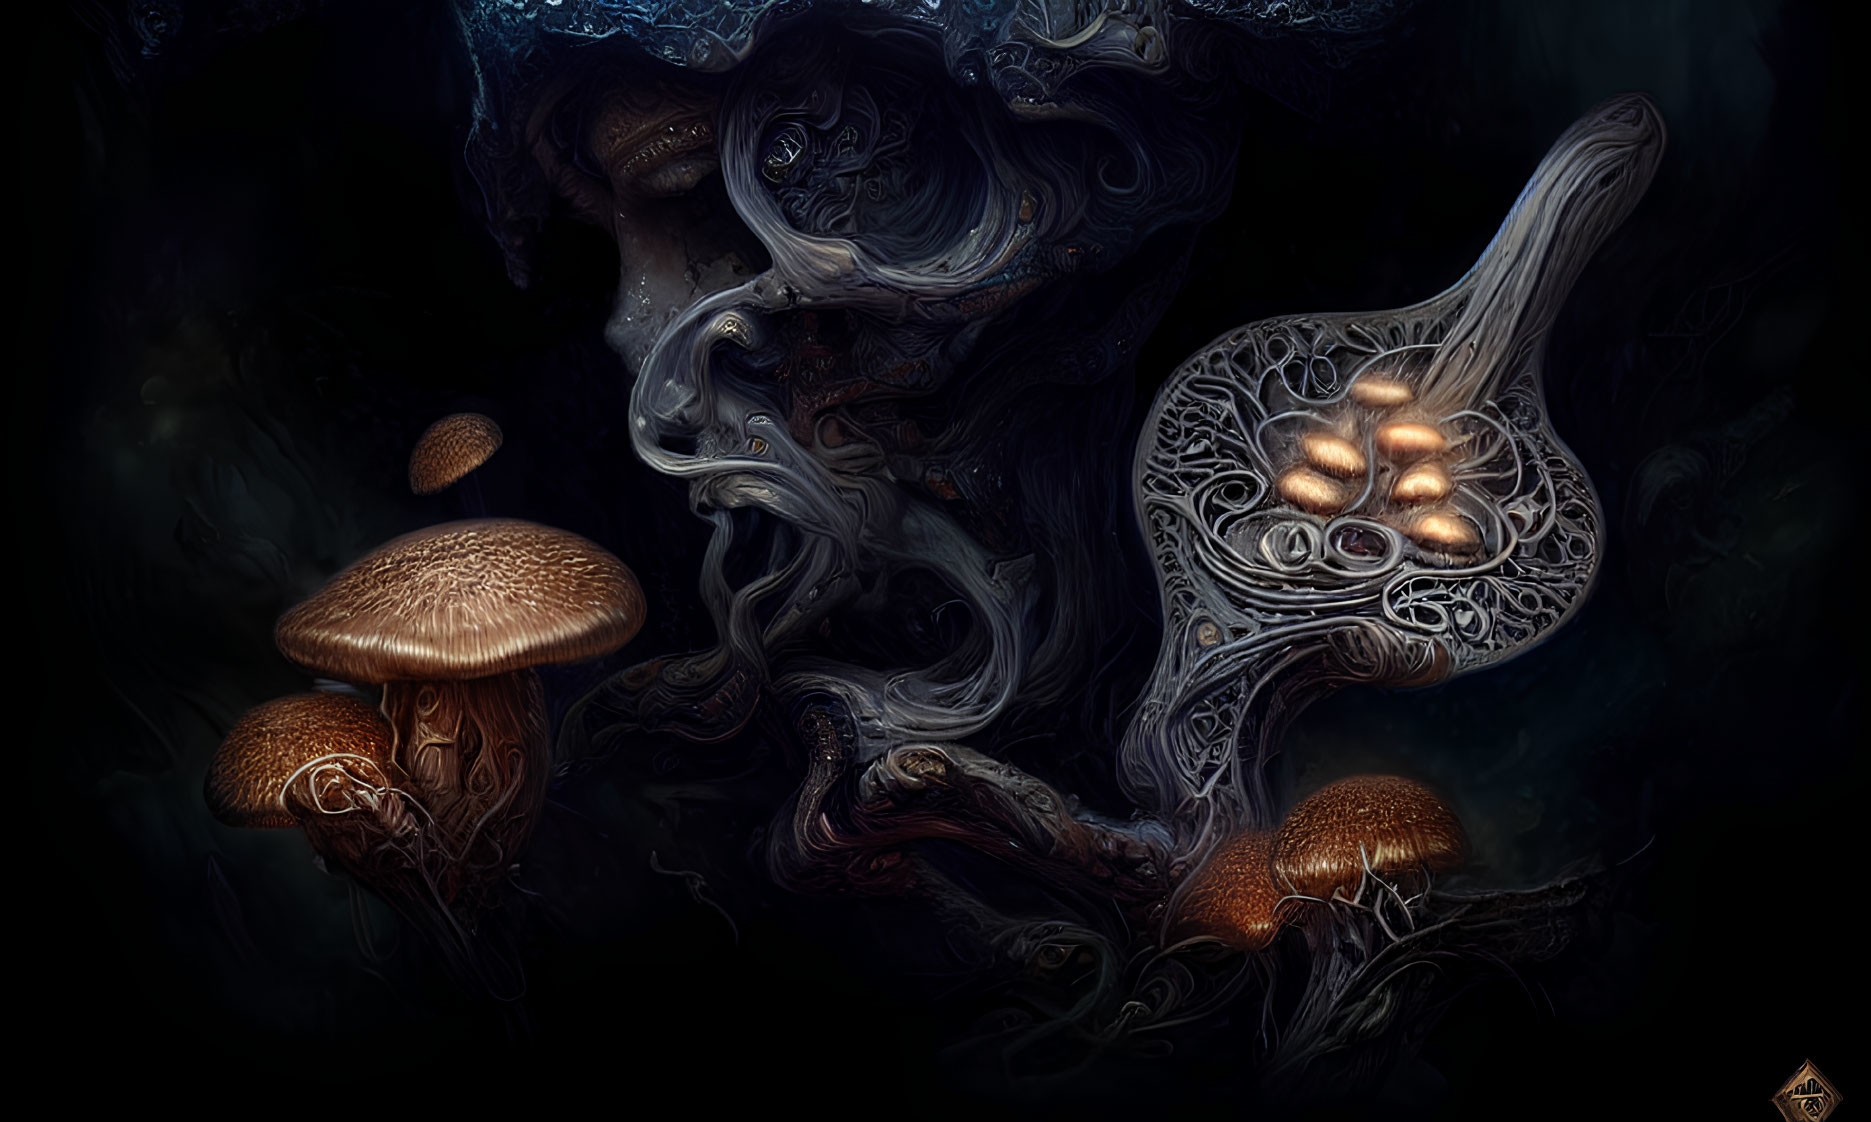 Luminescent Mushroom Artwork with Smoke-like Swirls